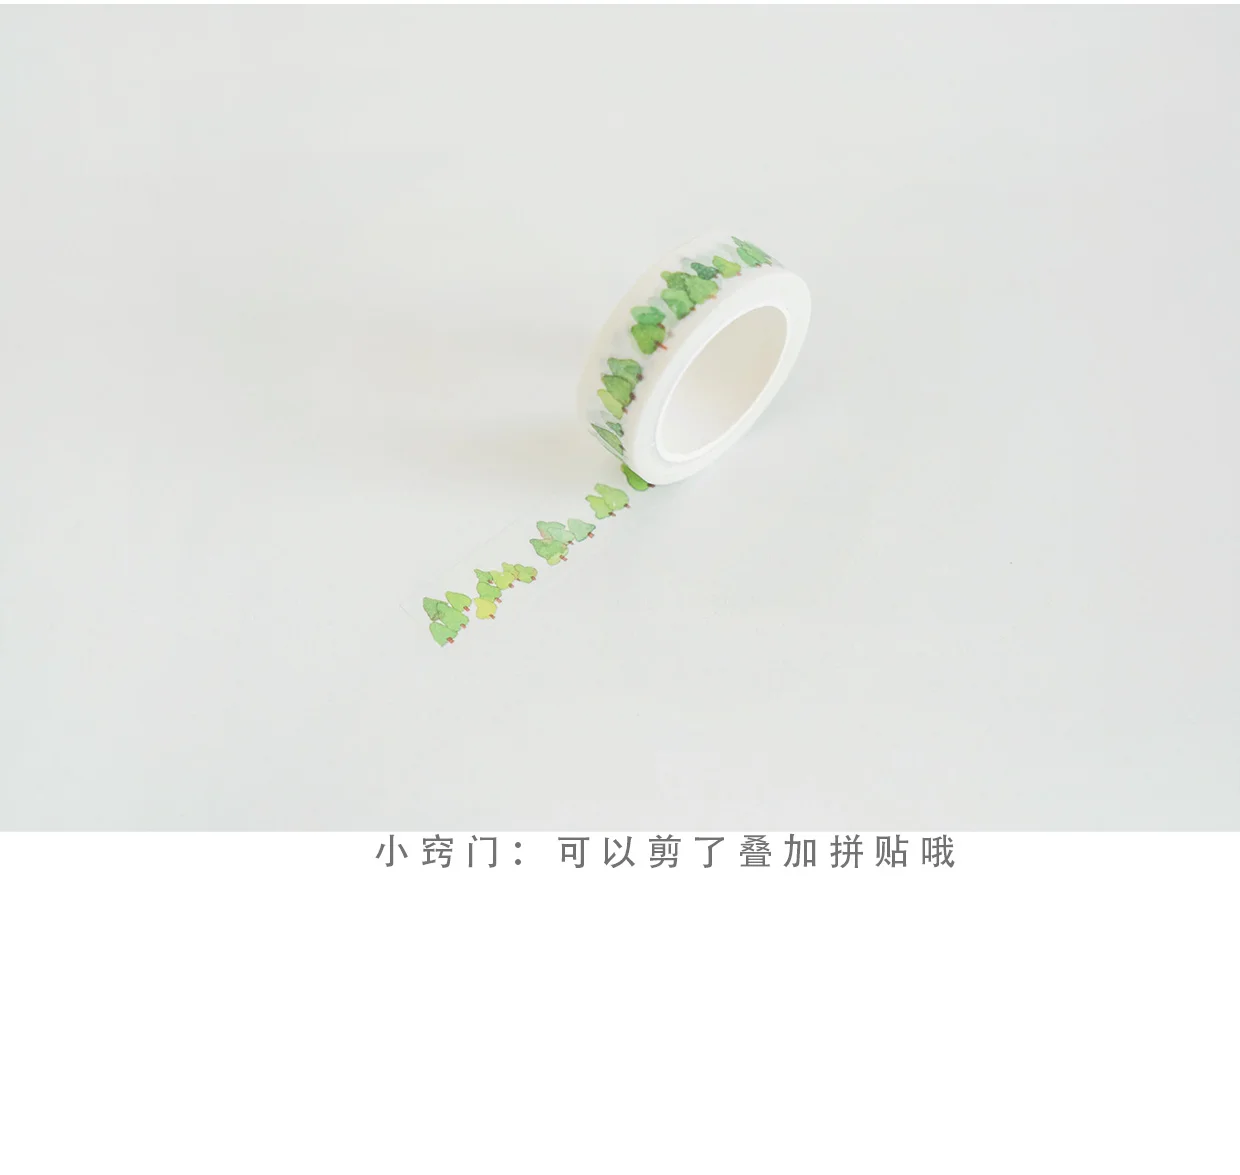 WOKO Kawaii Мини зеленых растений милые наклейка с изображением леса свежий зеленый дерево лента для декорации Washi DIY дневник в стиле Скрапбукинг изоляционная лента